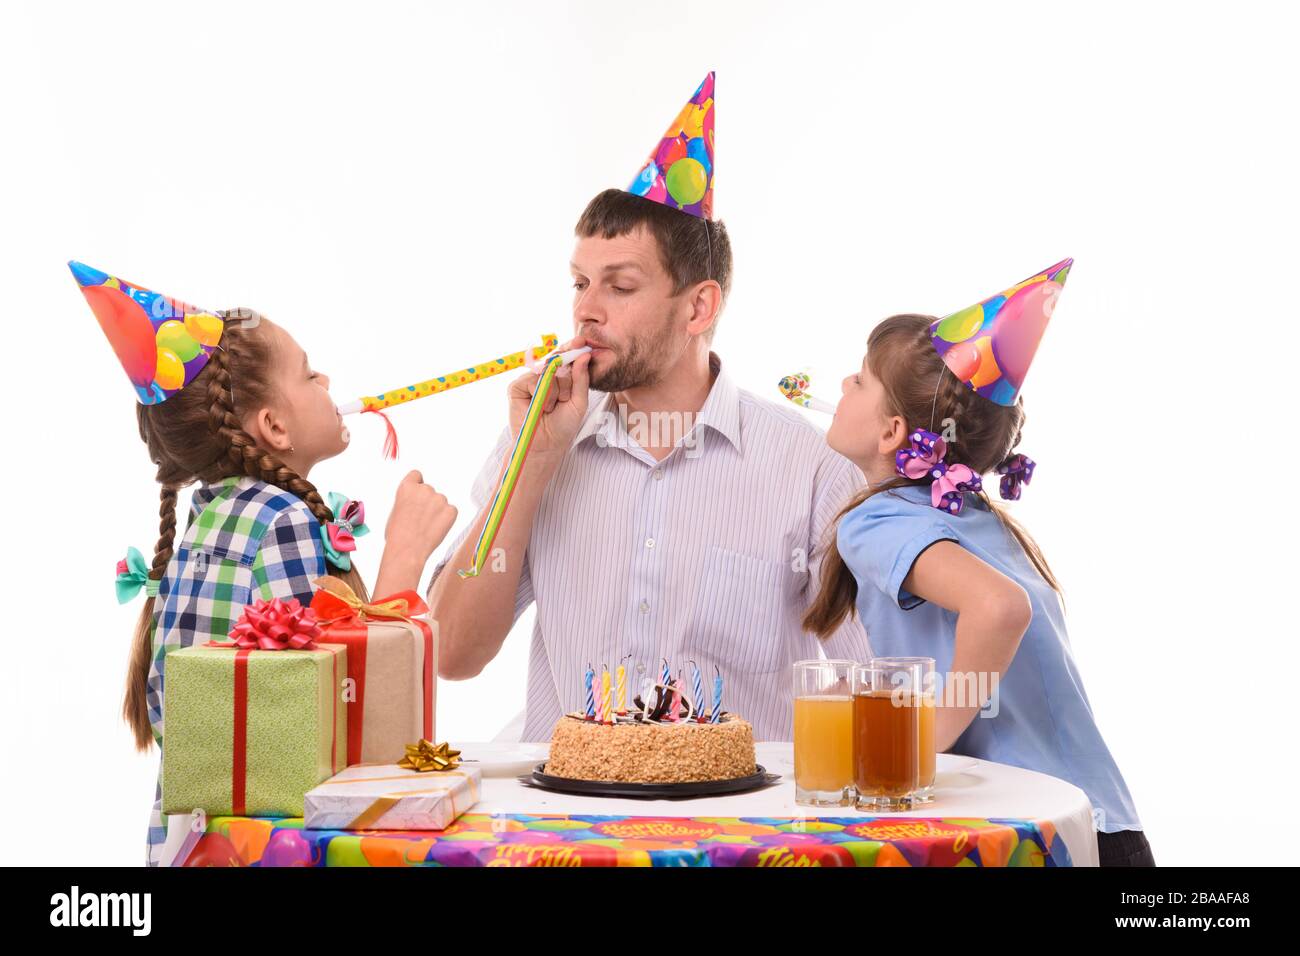 Les enfants et le père soufflent joyeusement les sifflets aux cornes lors d'une fête d'anniversaire Banque D'Images